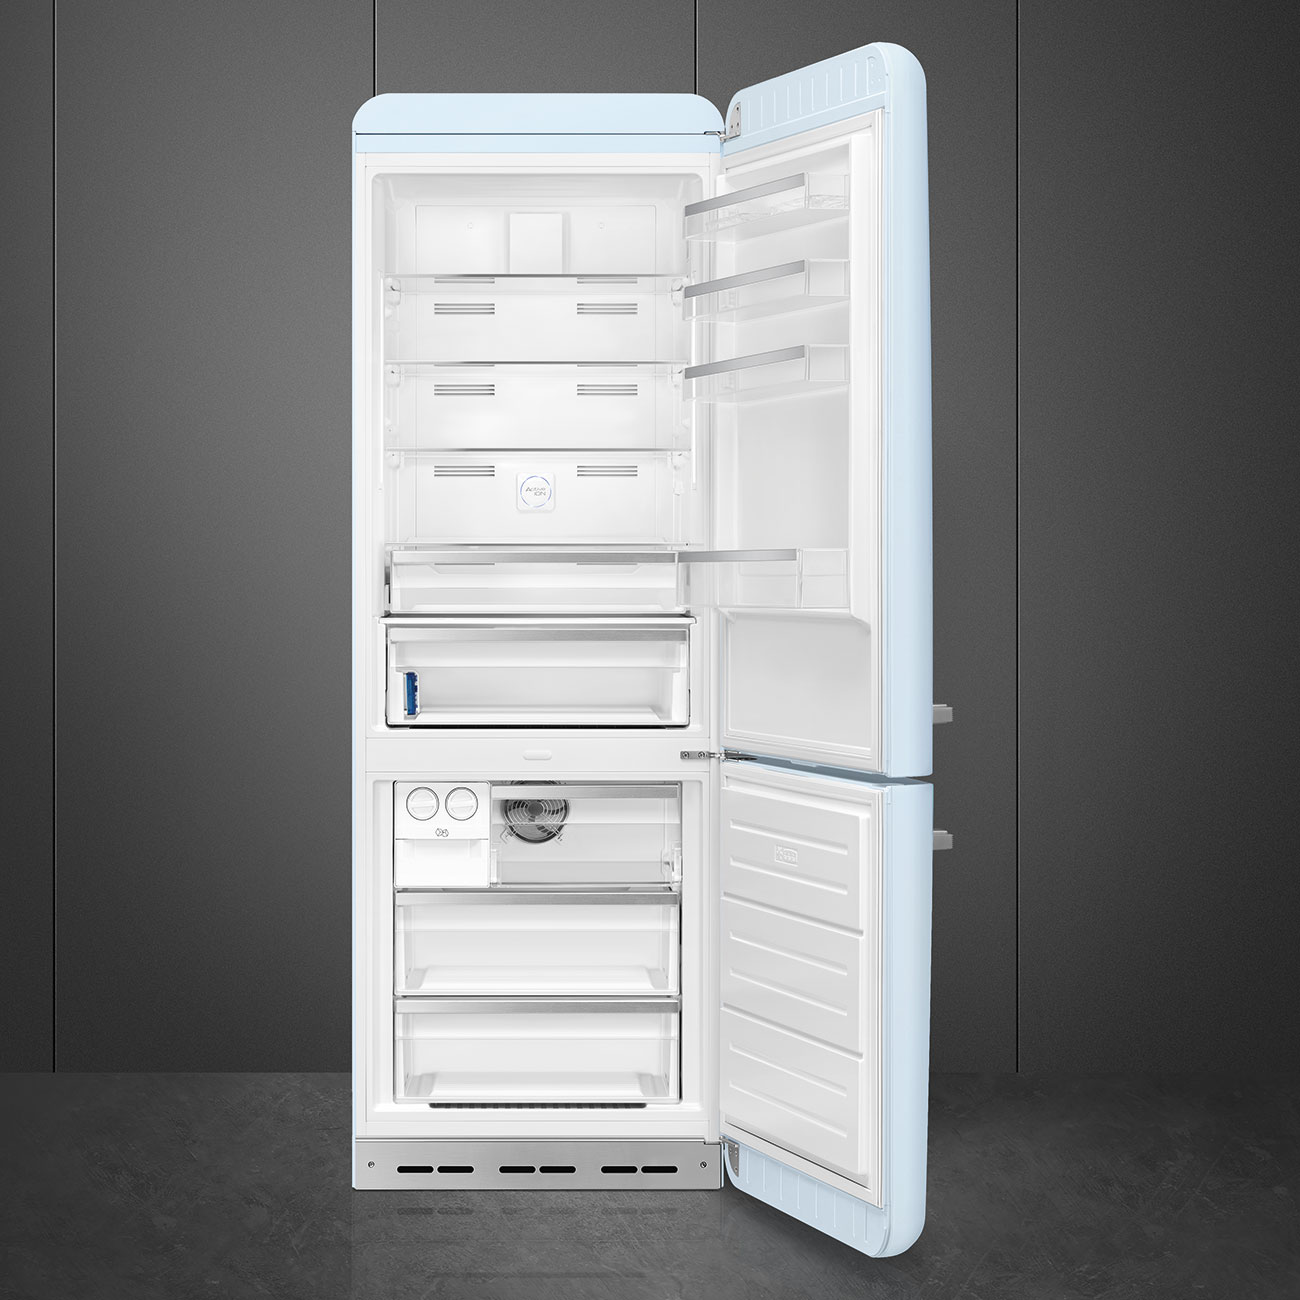 Pastel blue refrigerator - Smeg_2